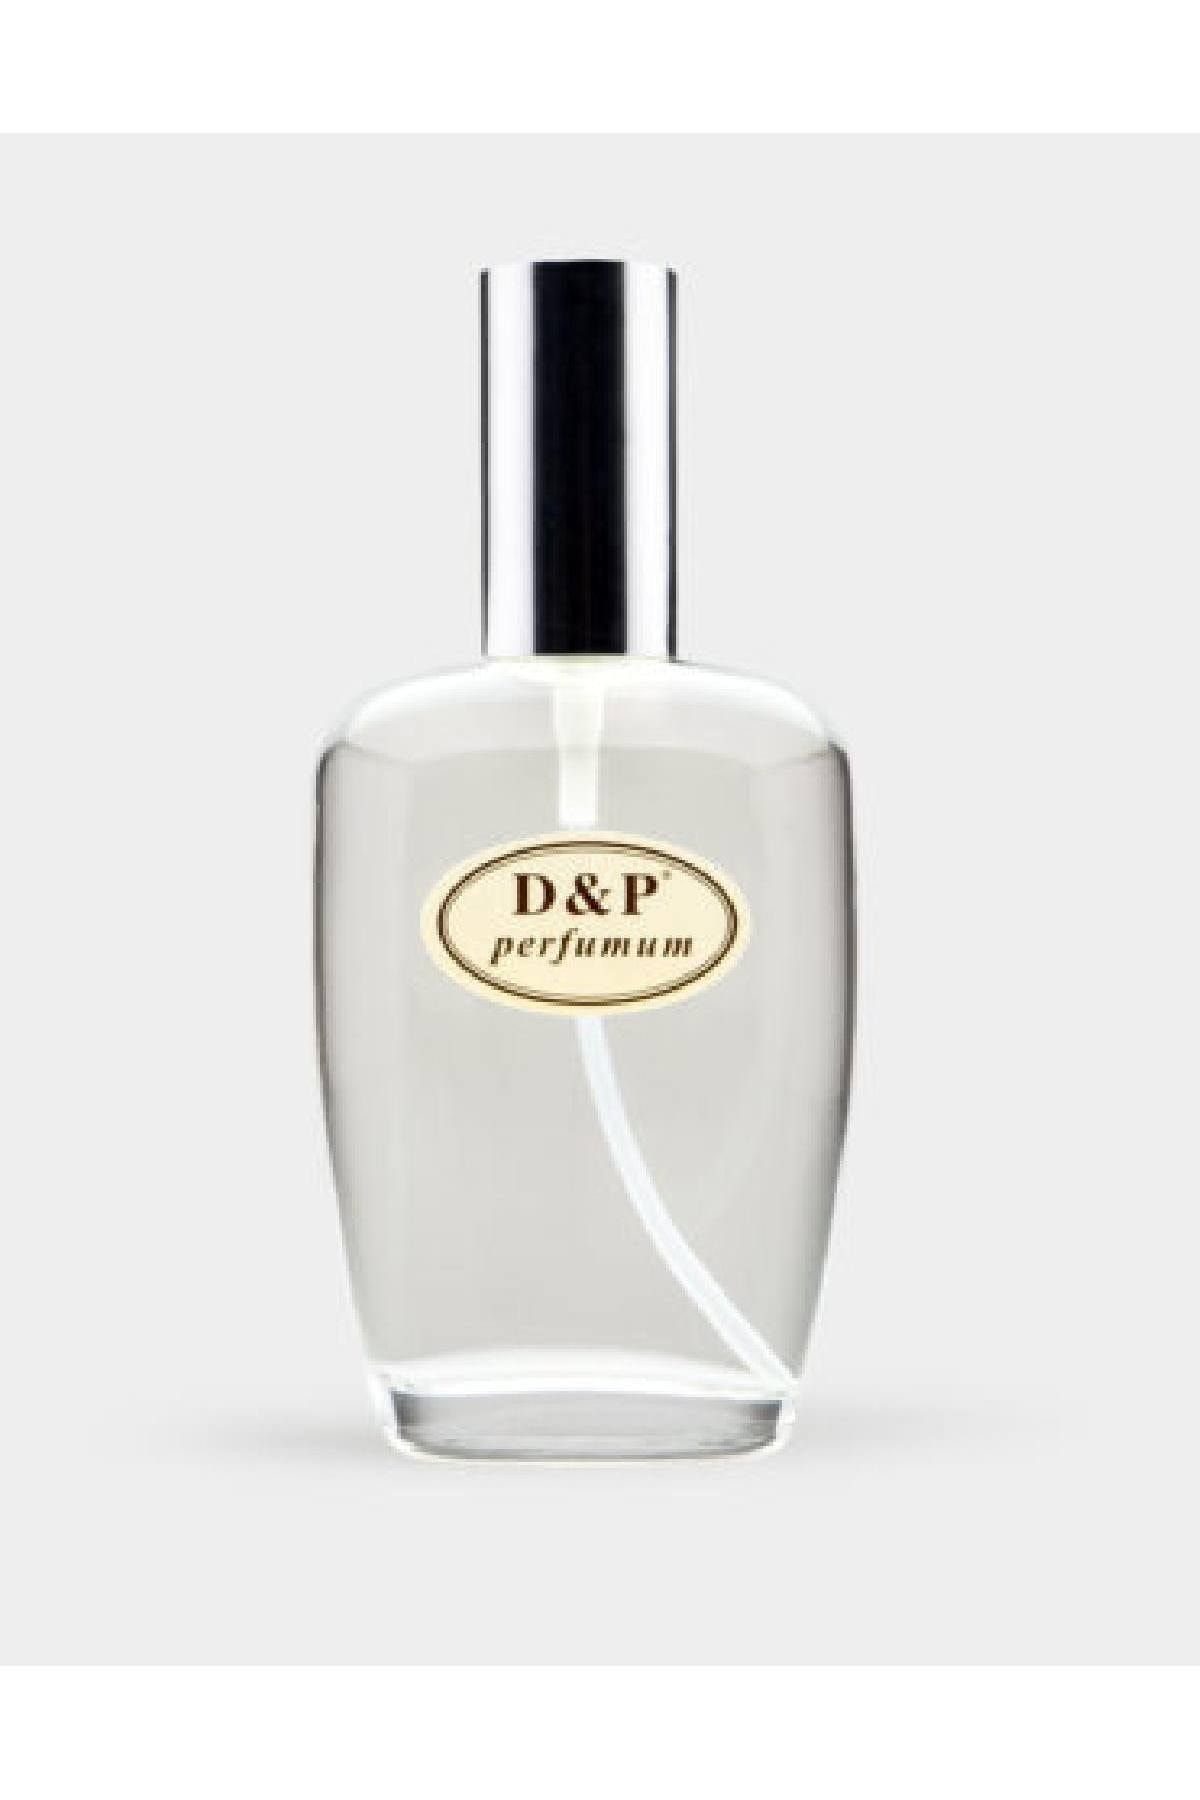 D&P Perfumum L12 Kadın Parfüm Edp 50 ml